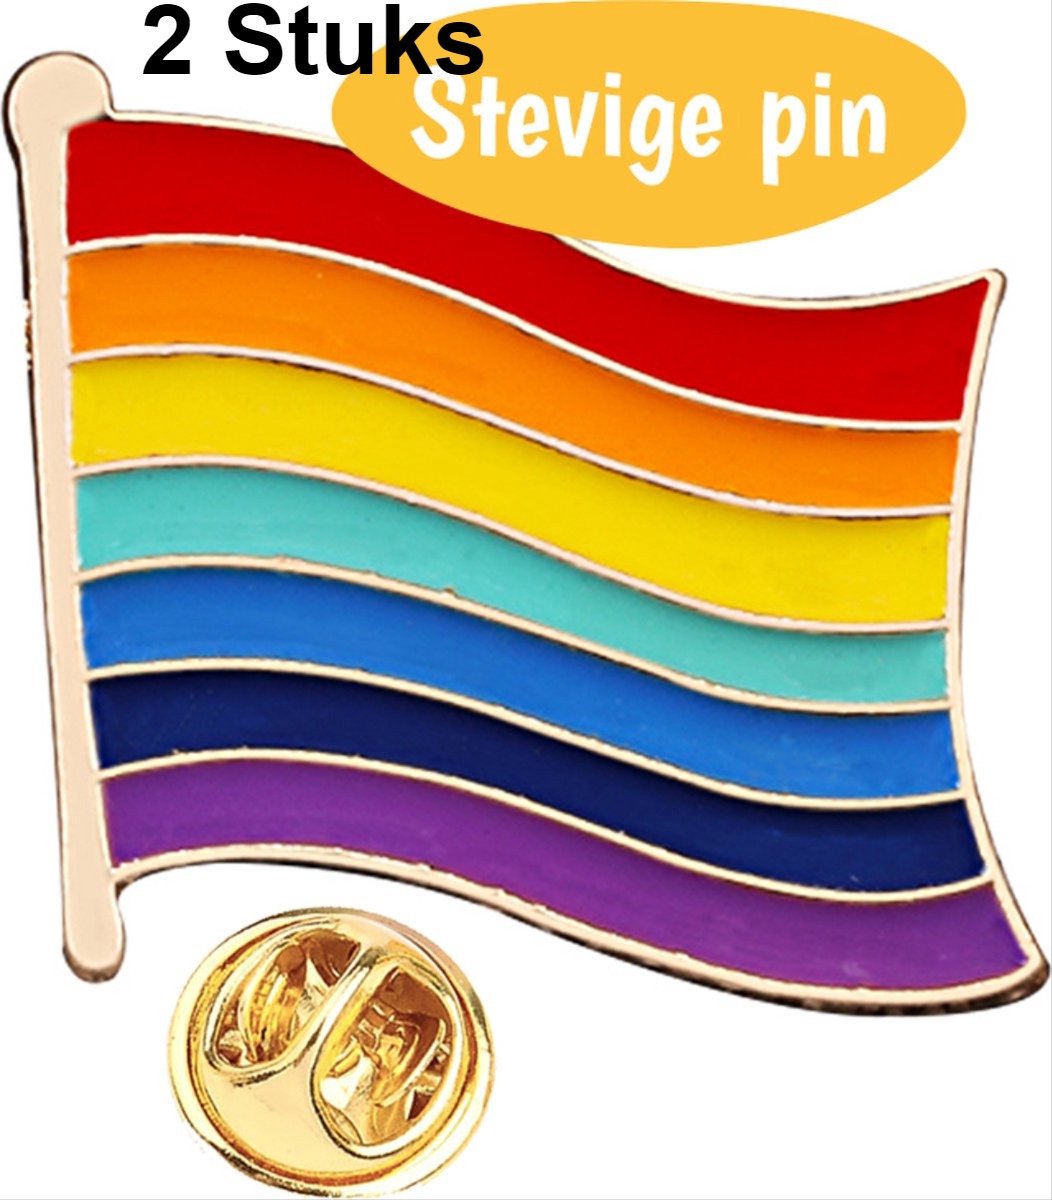 *** 2 Stuks Pride Broche - Vier de LGBTQ+ Gemeenschap met deze Regenboog Vlag Pin Speld - van Heble® ***